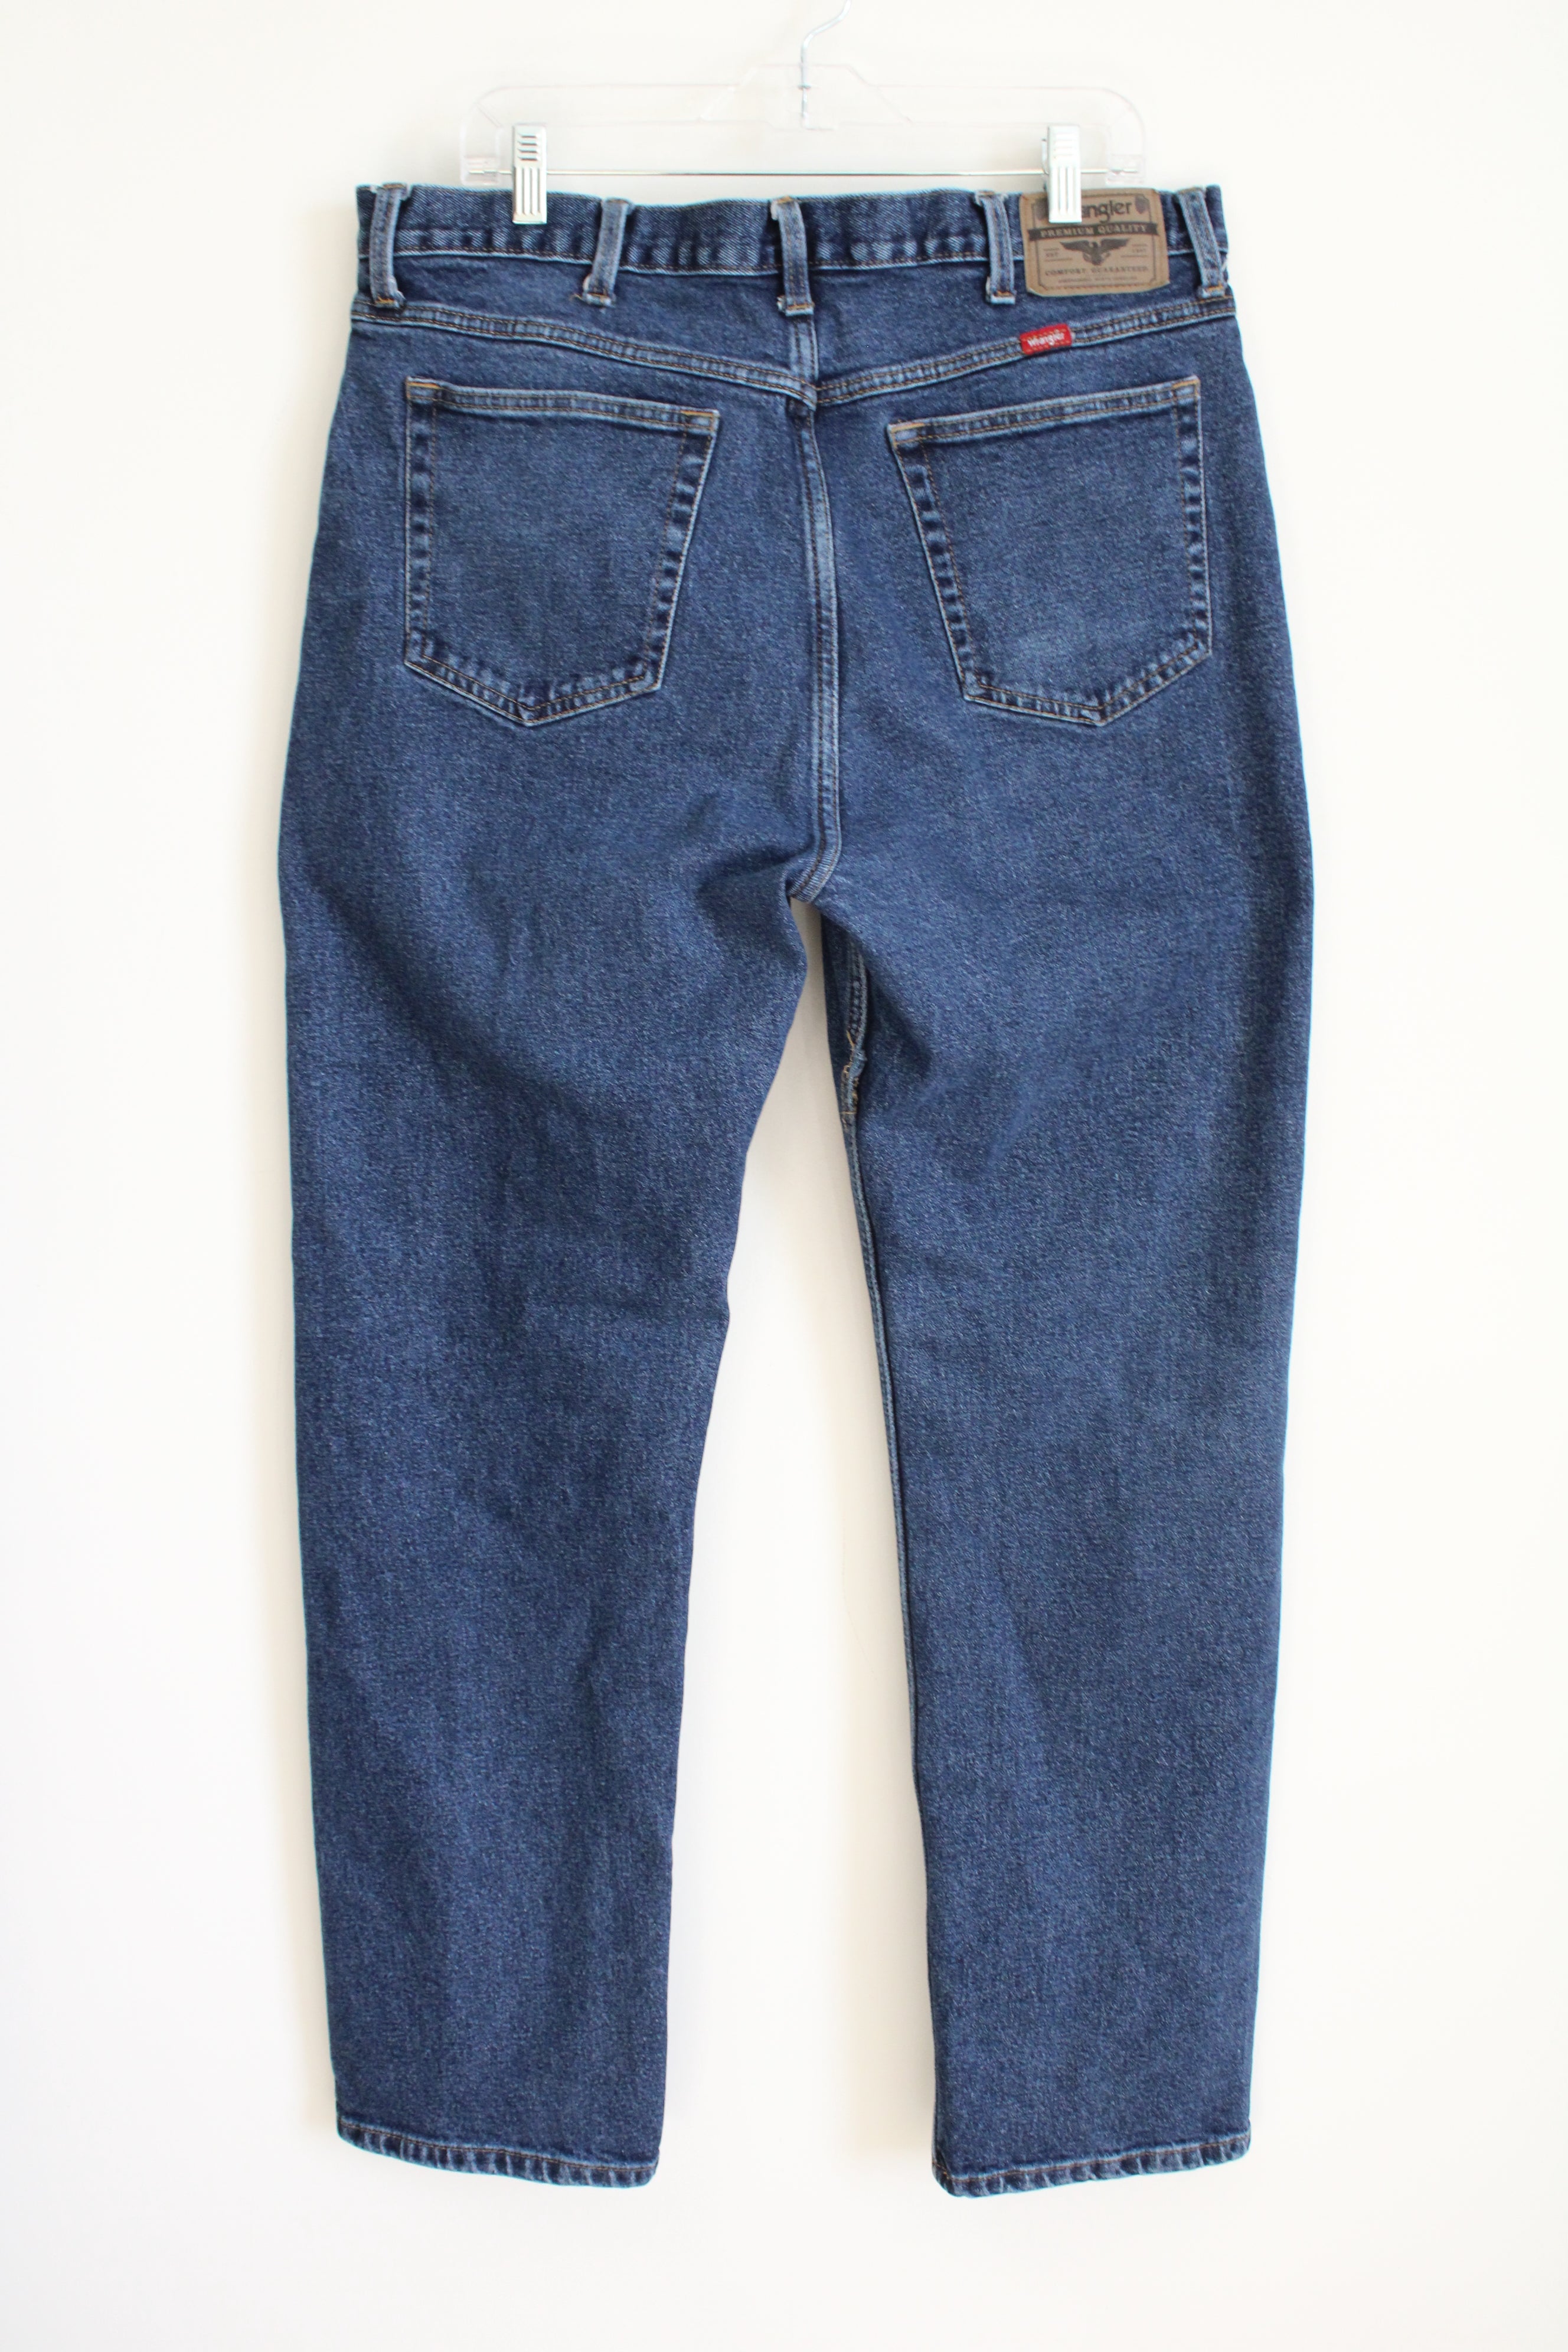 Wrangler Blue Jeans | 38X34